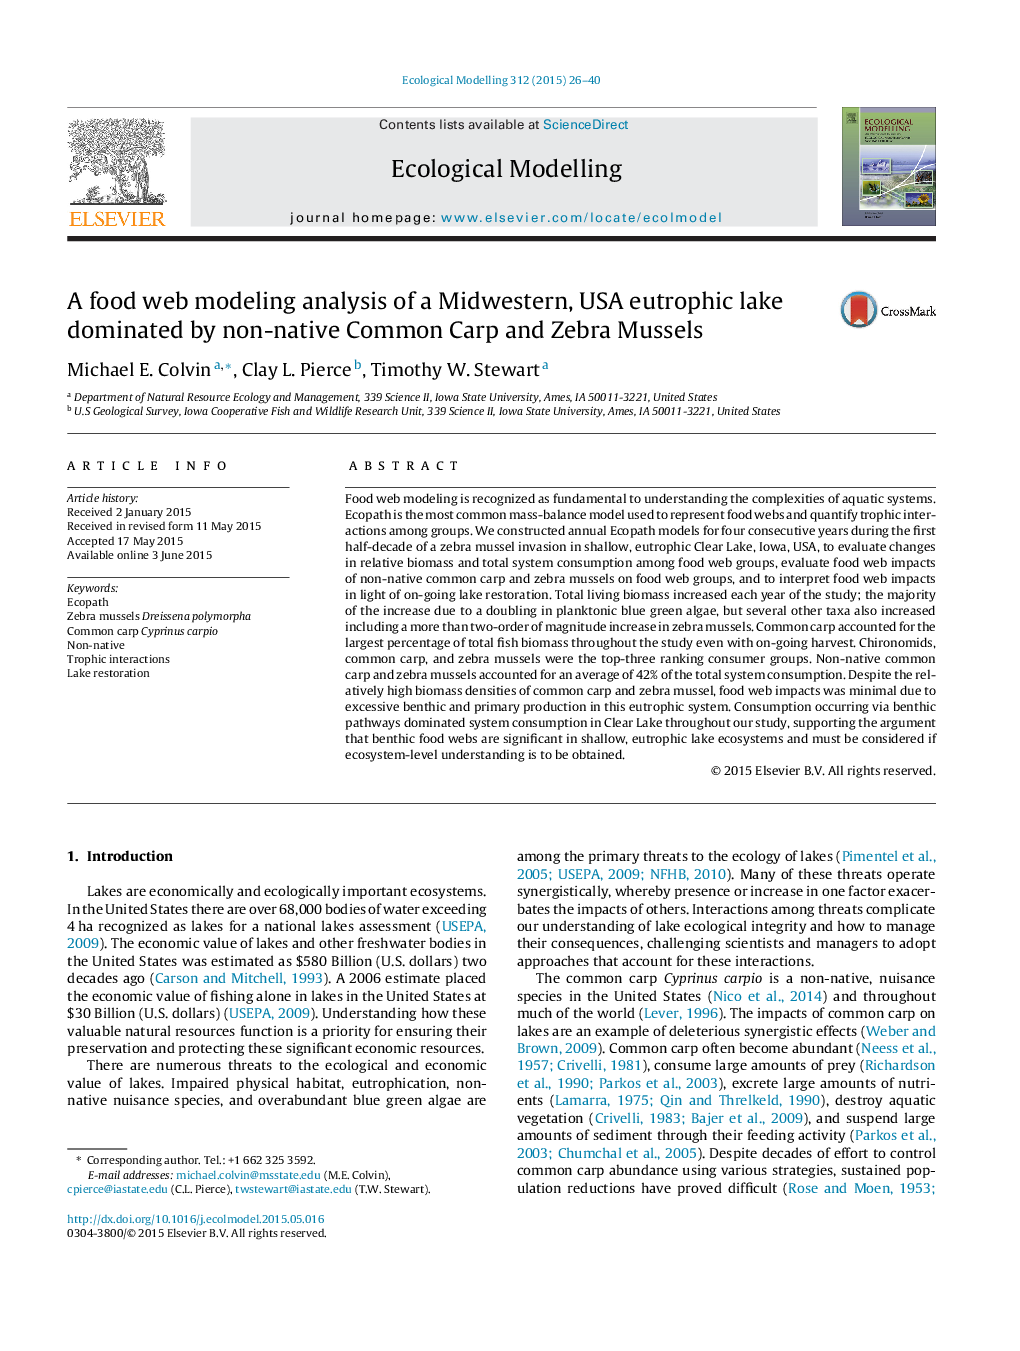 تجزیه و تحلیل وب مدل سازی مواد غذایی از یک دریاچه یونجه در غرب غرب، ایالات متحده تحت سلطه کپور معمولی غیر مادری و صدف گورخر 